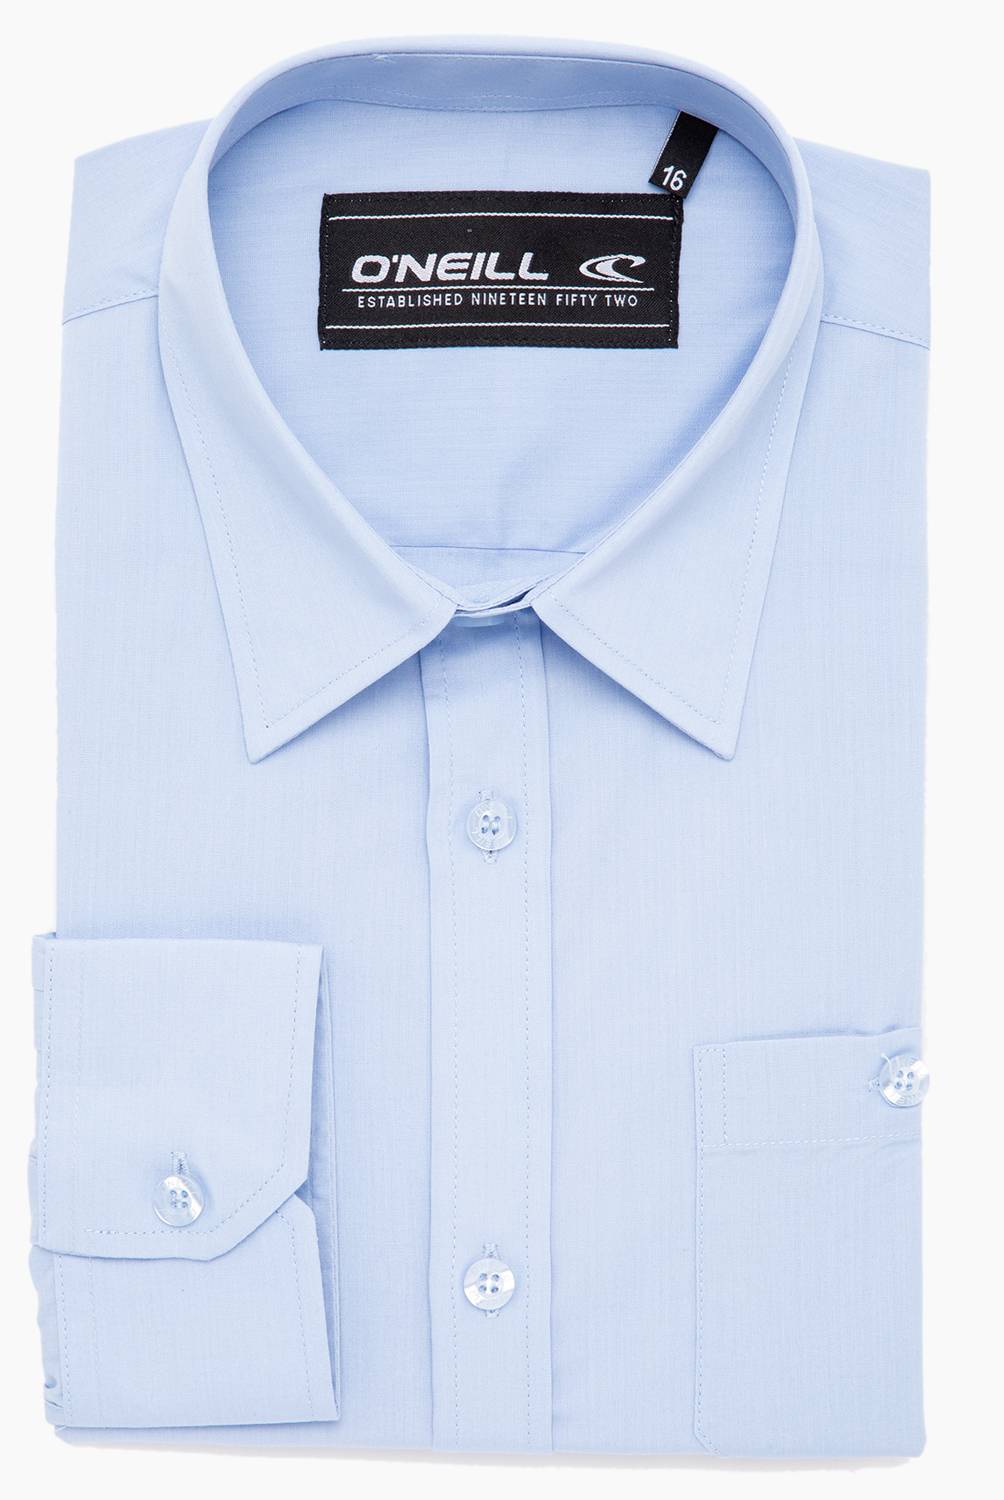 O'NEILL - Camisa Escolar Niño Celeste O'Neill